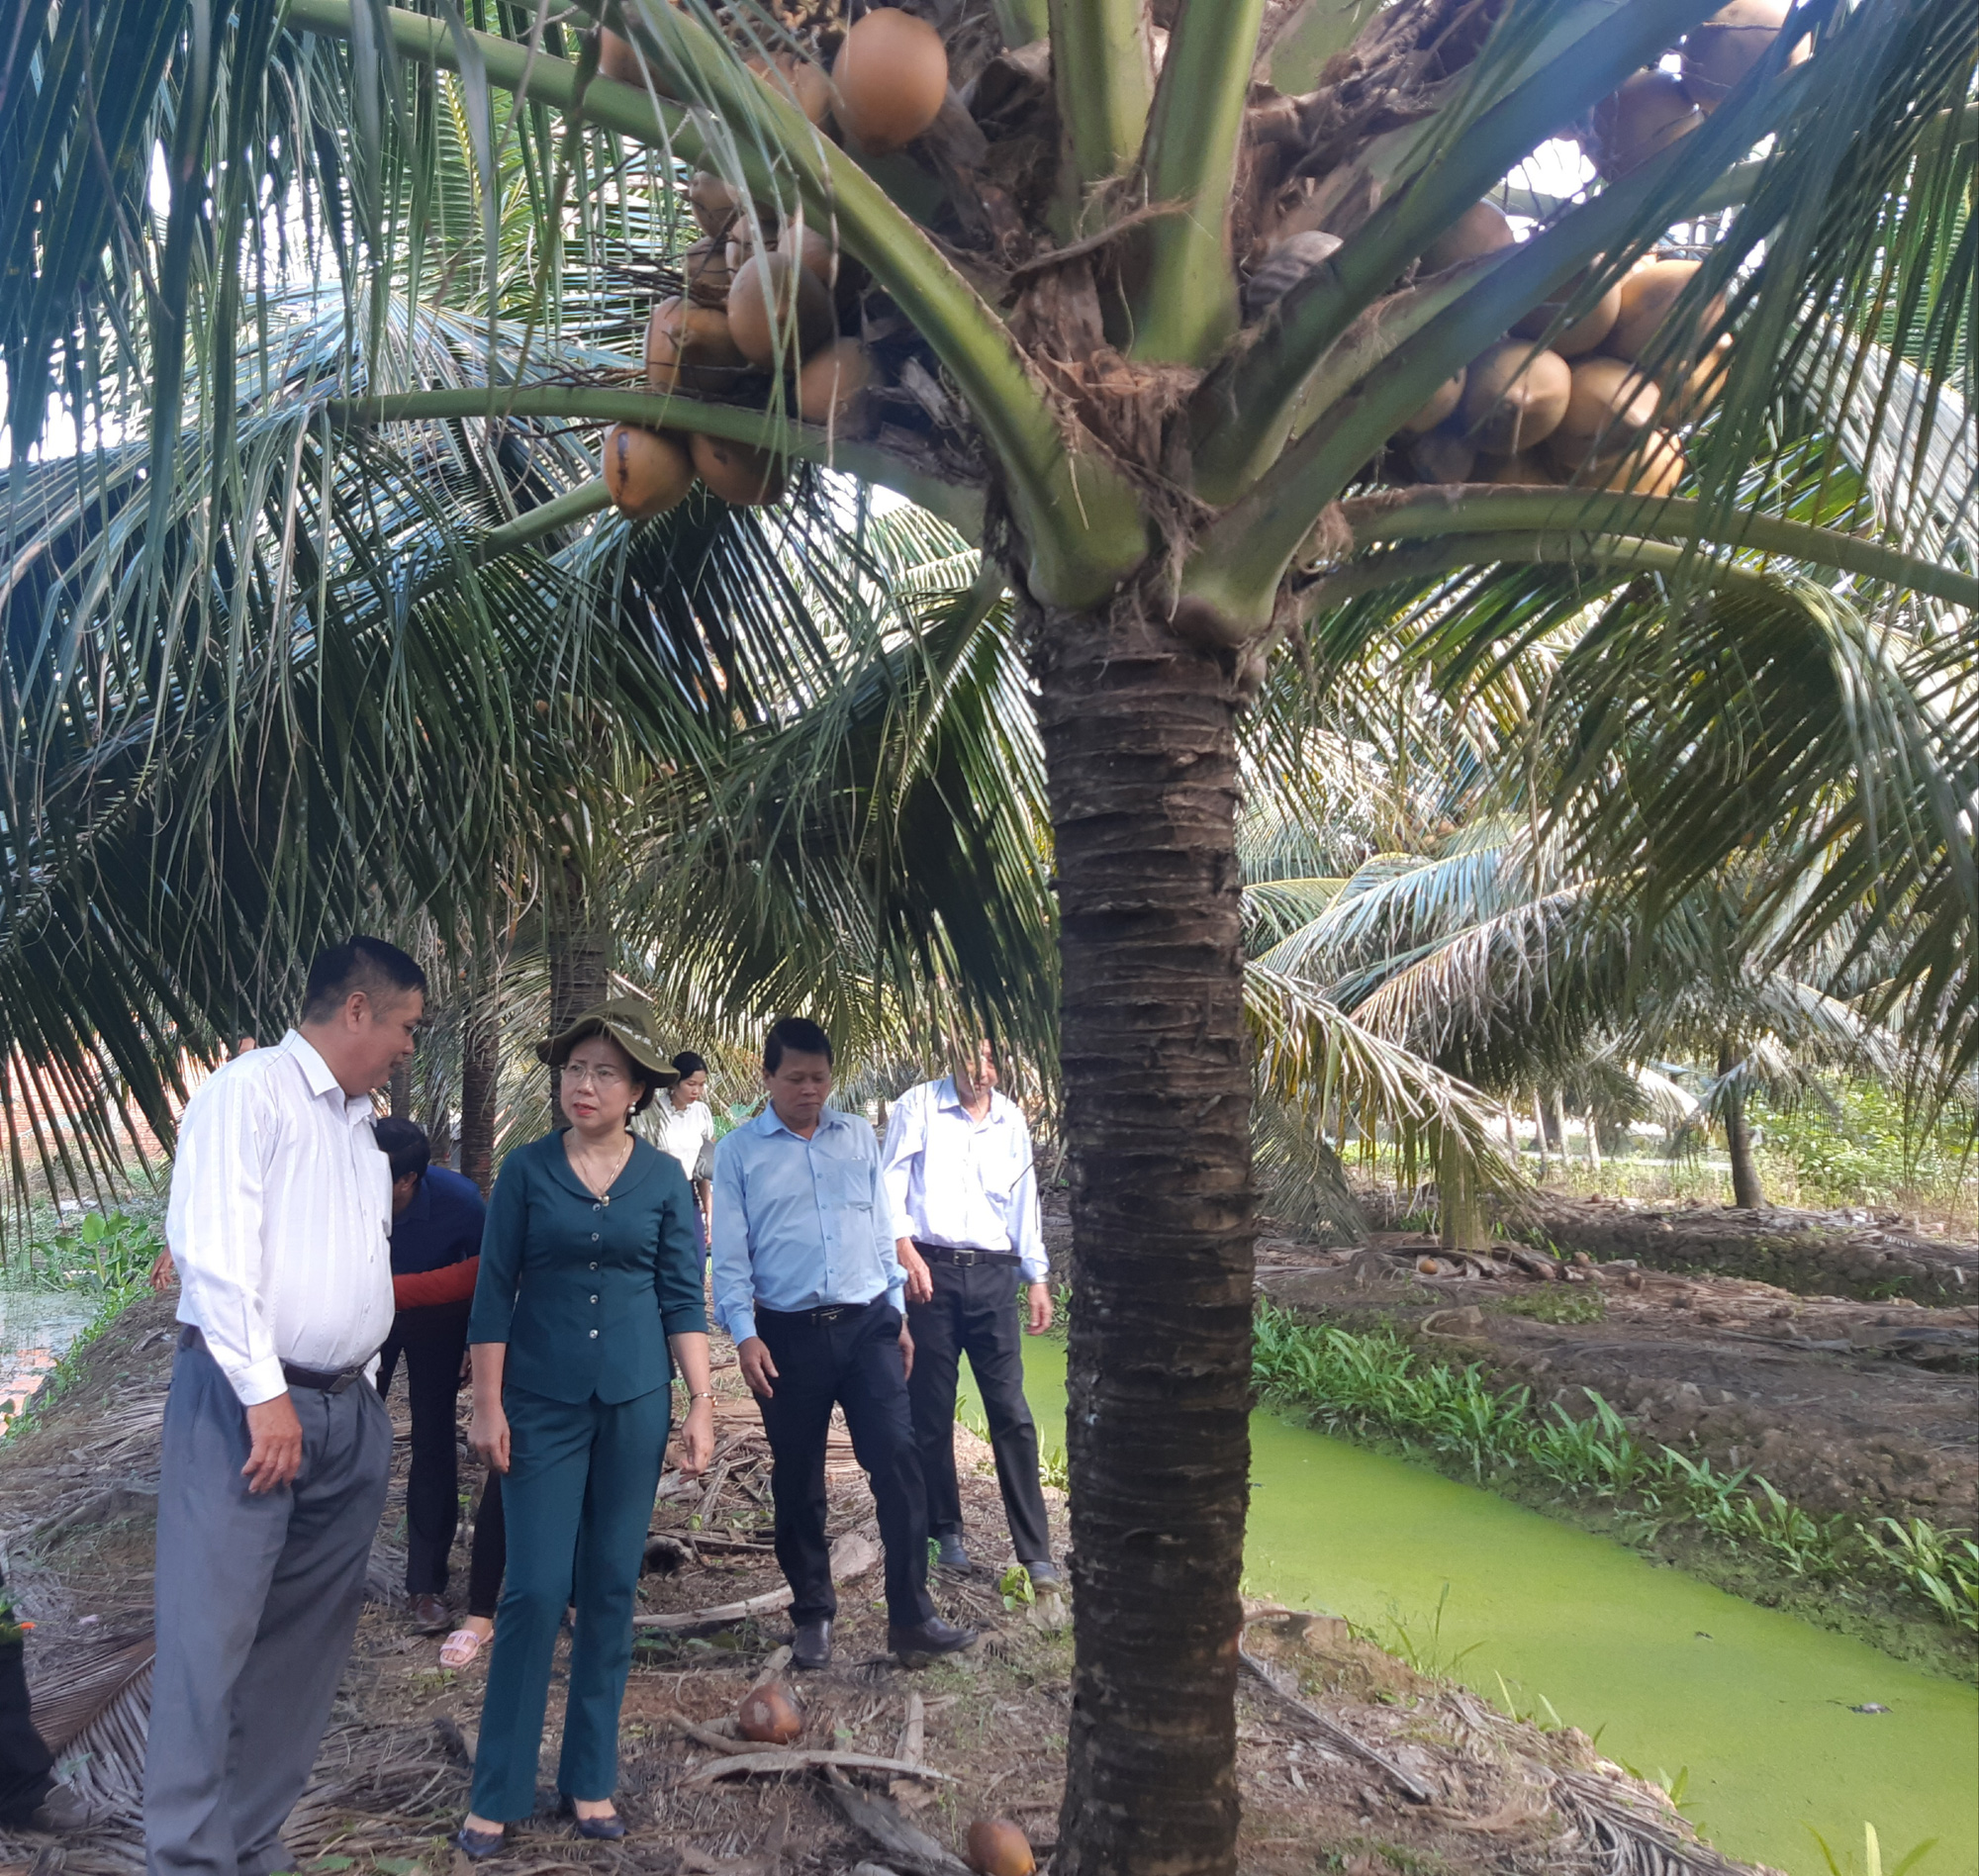 Phó Chủ tịch TƯ Hội NDVN Bùi Thị Thơm kiểm tra công tác Hội và phong trào nông dân tại Bến Tre - Ảnh 4.